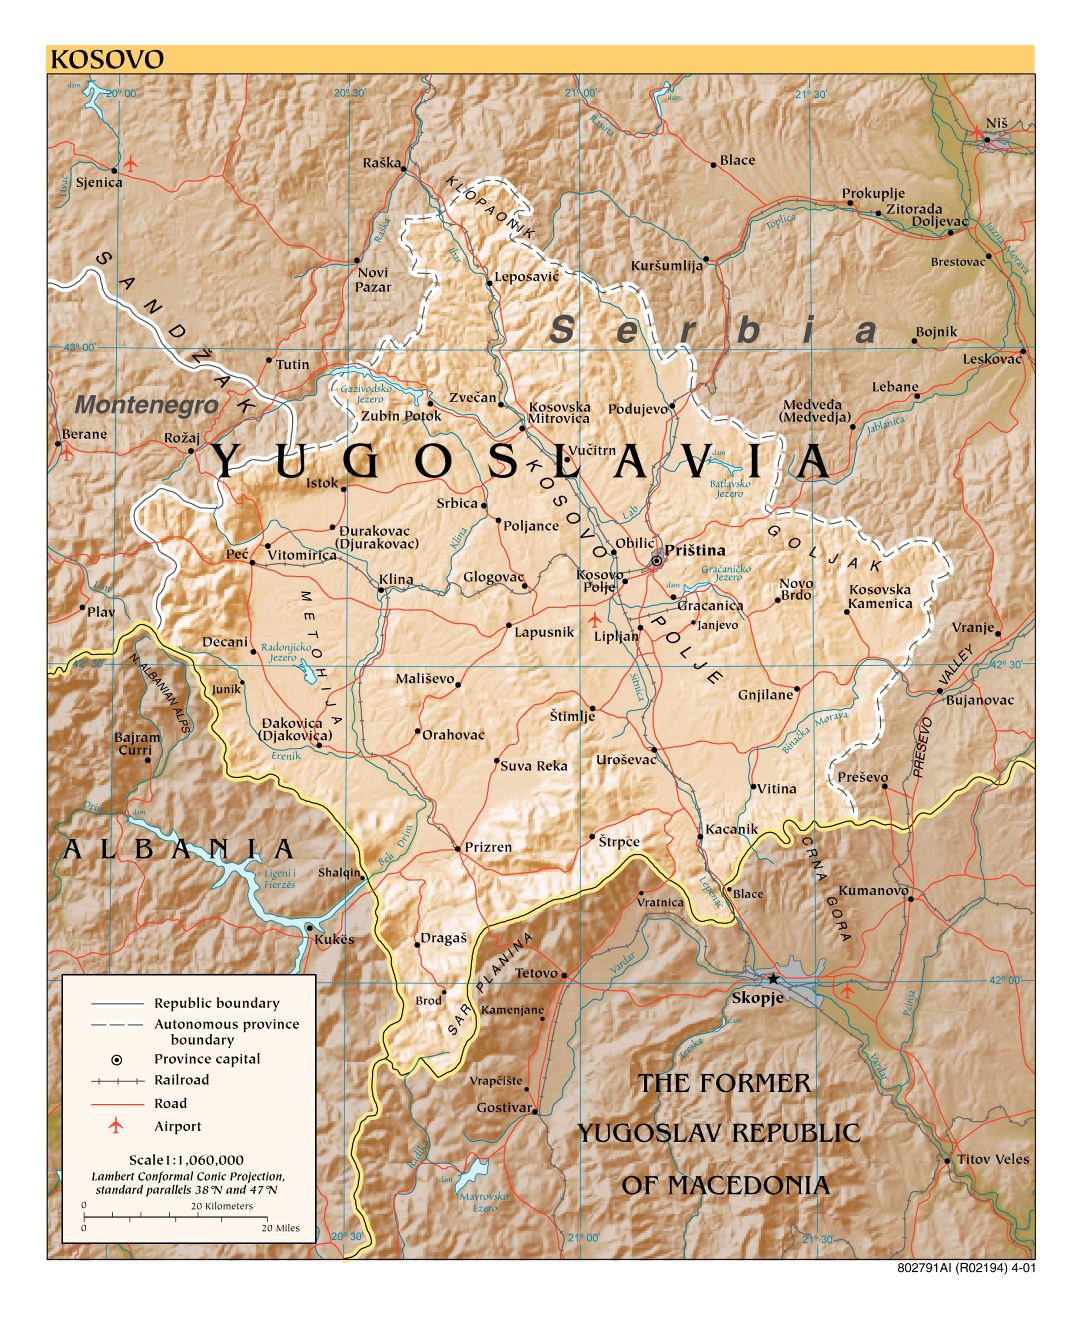 Grande detallada mapa política de Kosovo con alivio, carreteras, ferrocarriles, aeropuertos y ciudades - 2001